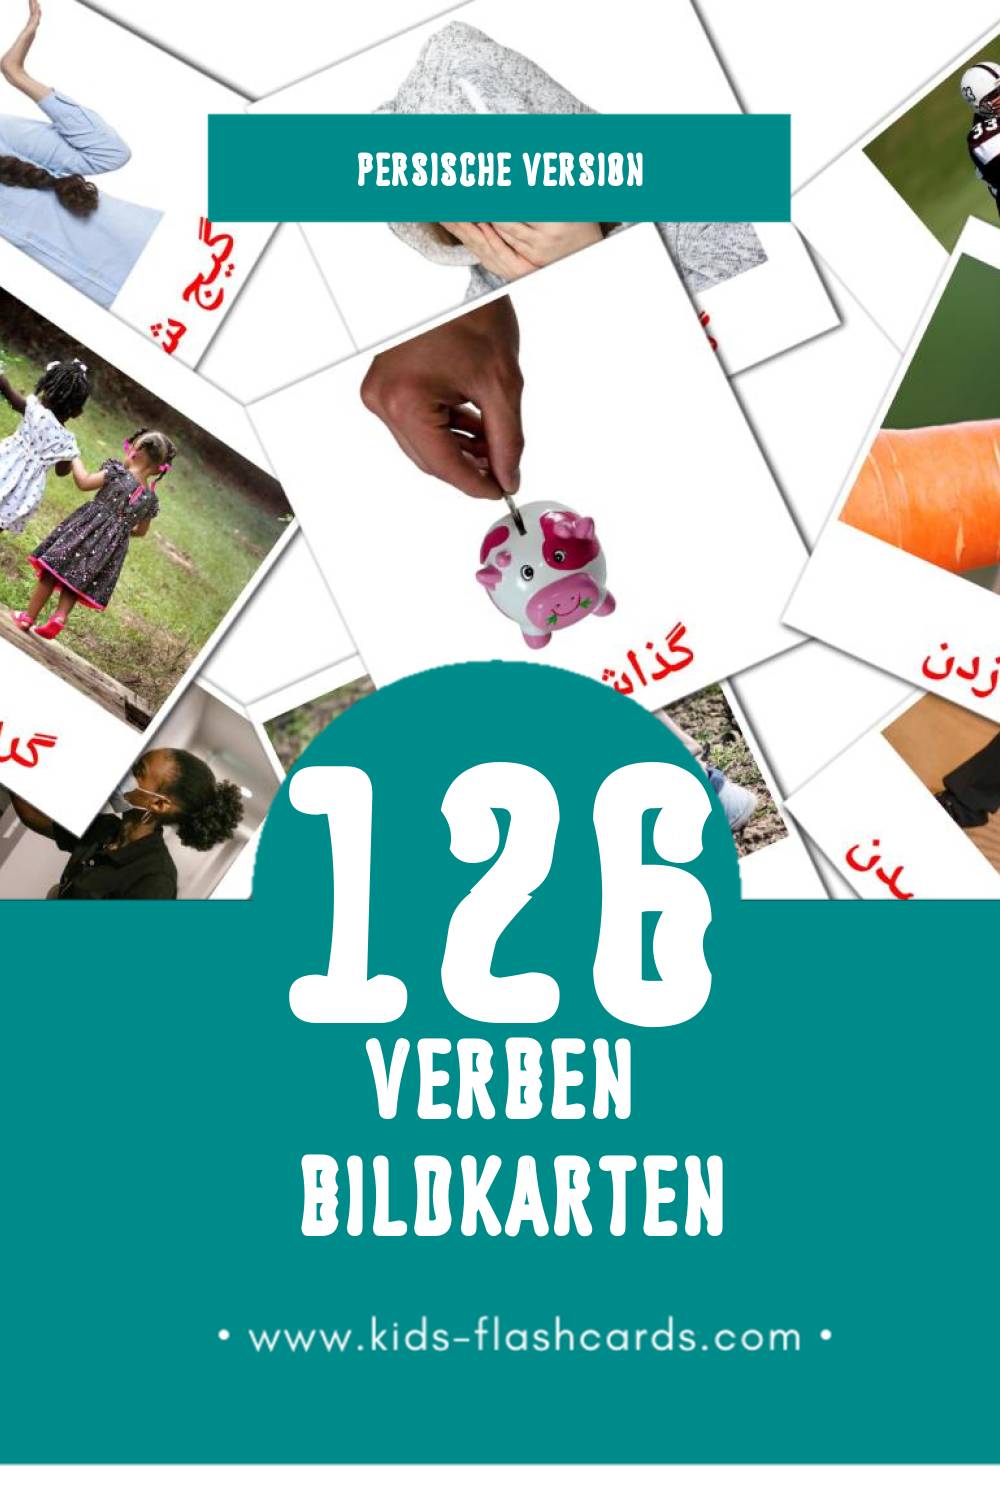 Visual افعال Flashcards für Kleinkinder (126 Karten in Persisch)